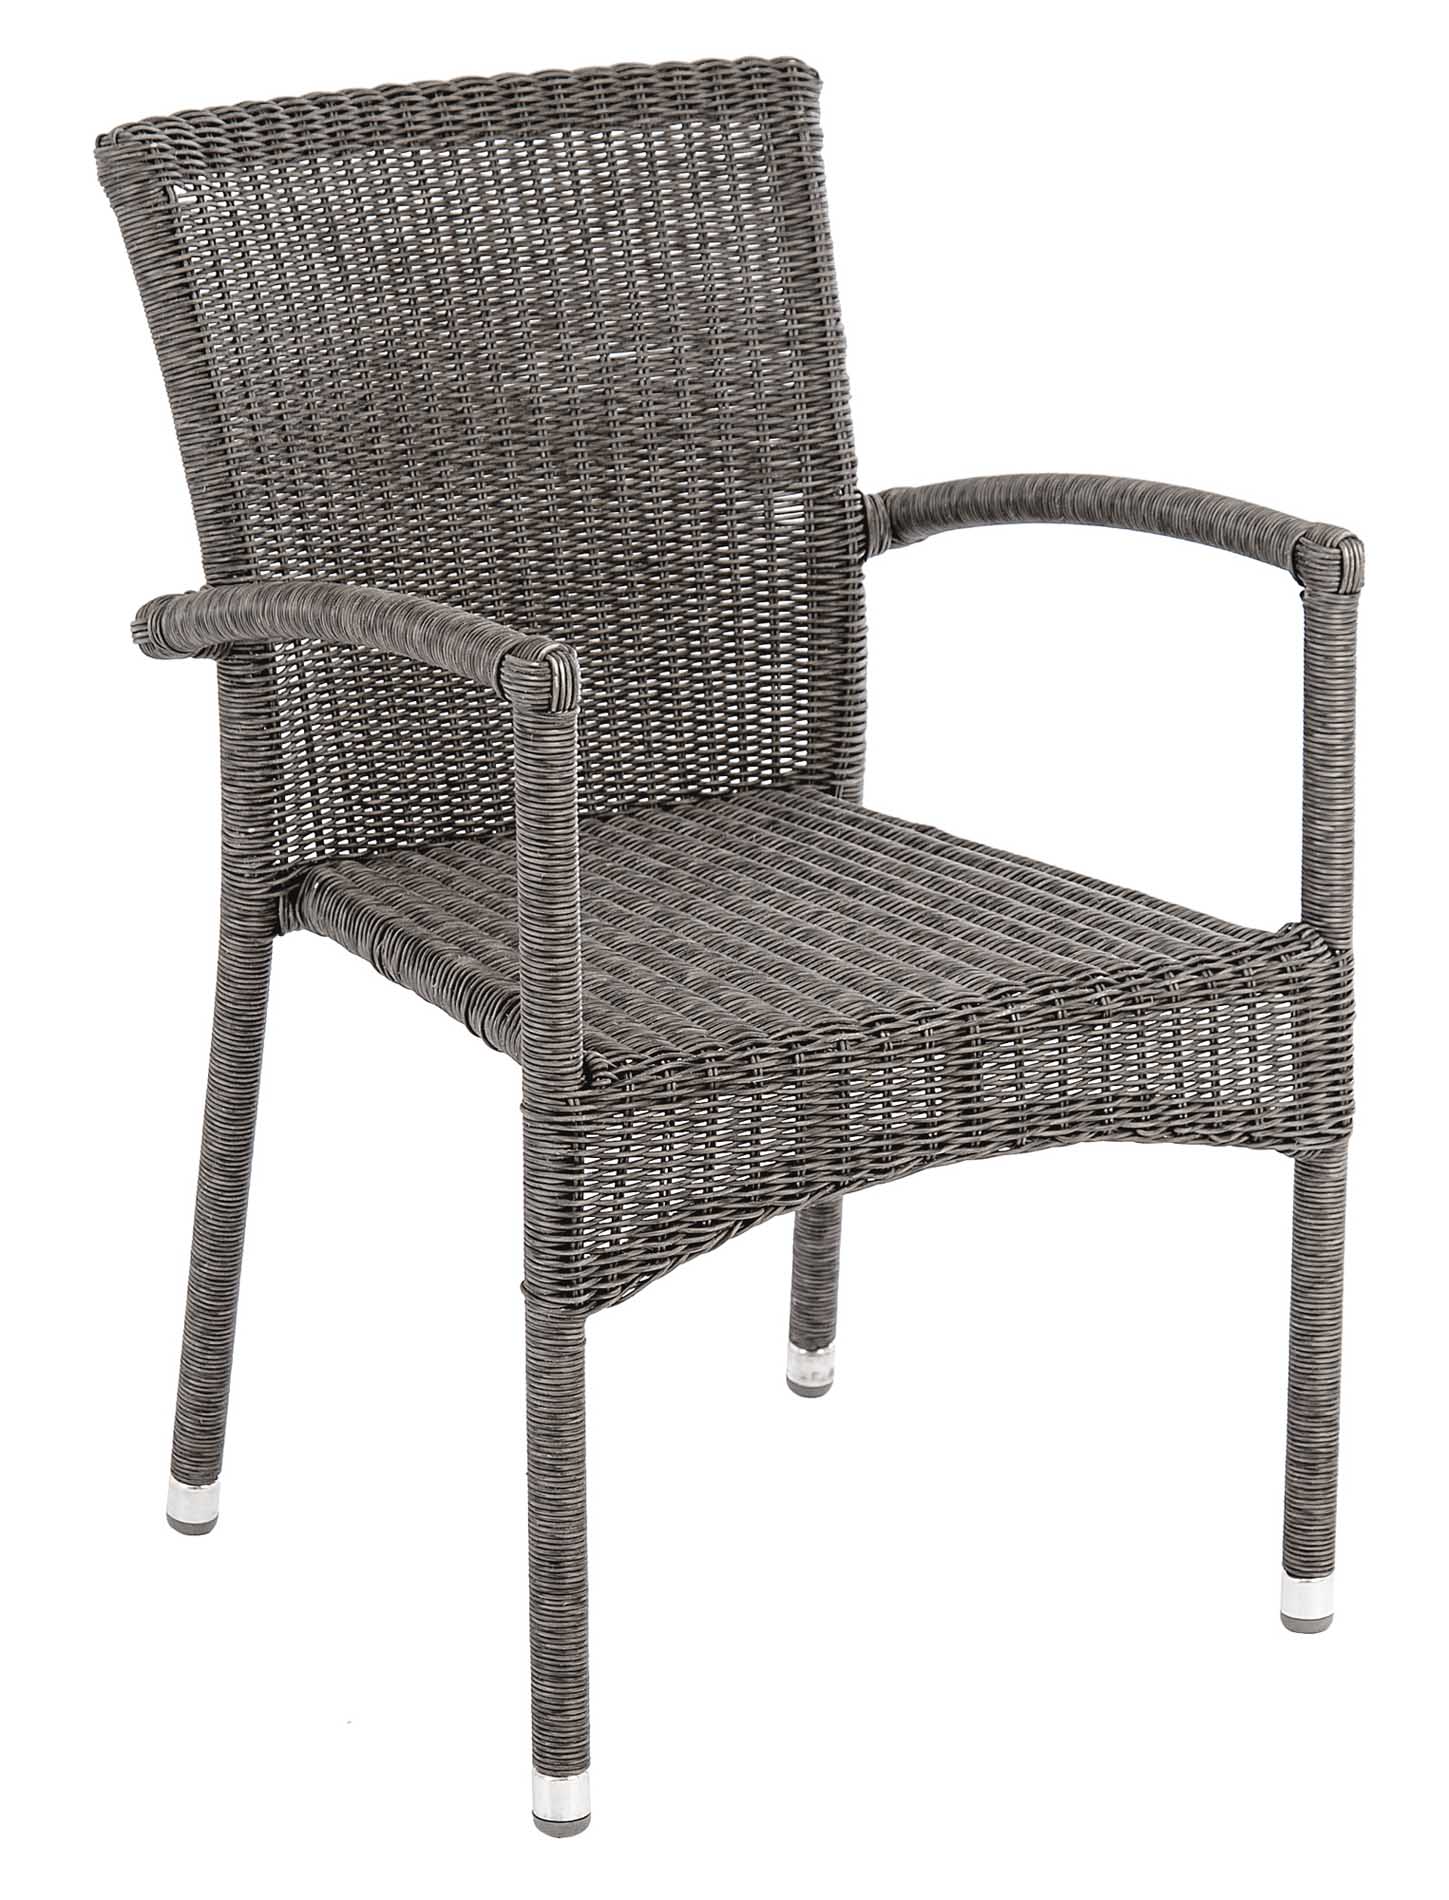 fauteuil repas empilable en aluminium et fibre synthétique grise